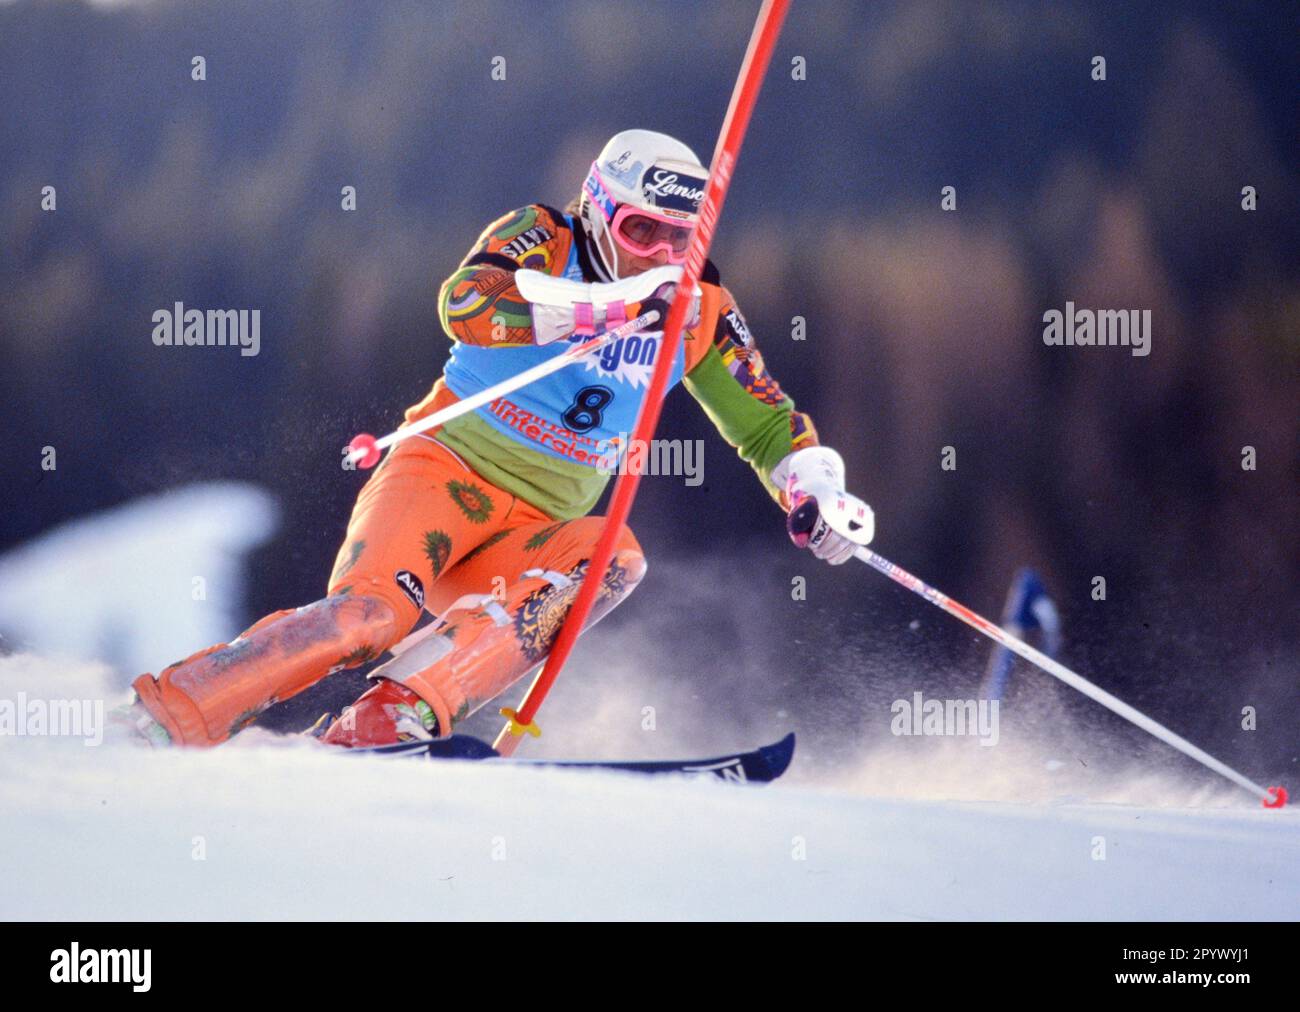 STAGIONE SCIISTICA ALPIN 90/91 Campionati del mondo 1991 Saalbach-Hinterglemm Slalom Men 22.01.1991 Armin BITTNER (GER) xxNOxMODELxRELEASExx [traduzione automatica]- AUSTRIA OUT Foto Stock